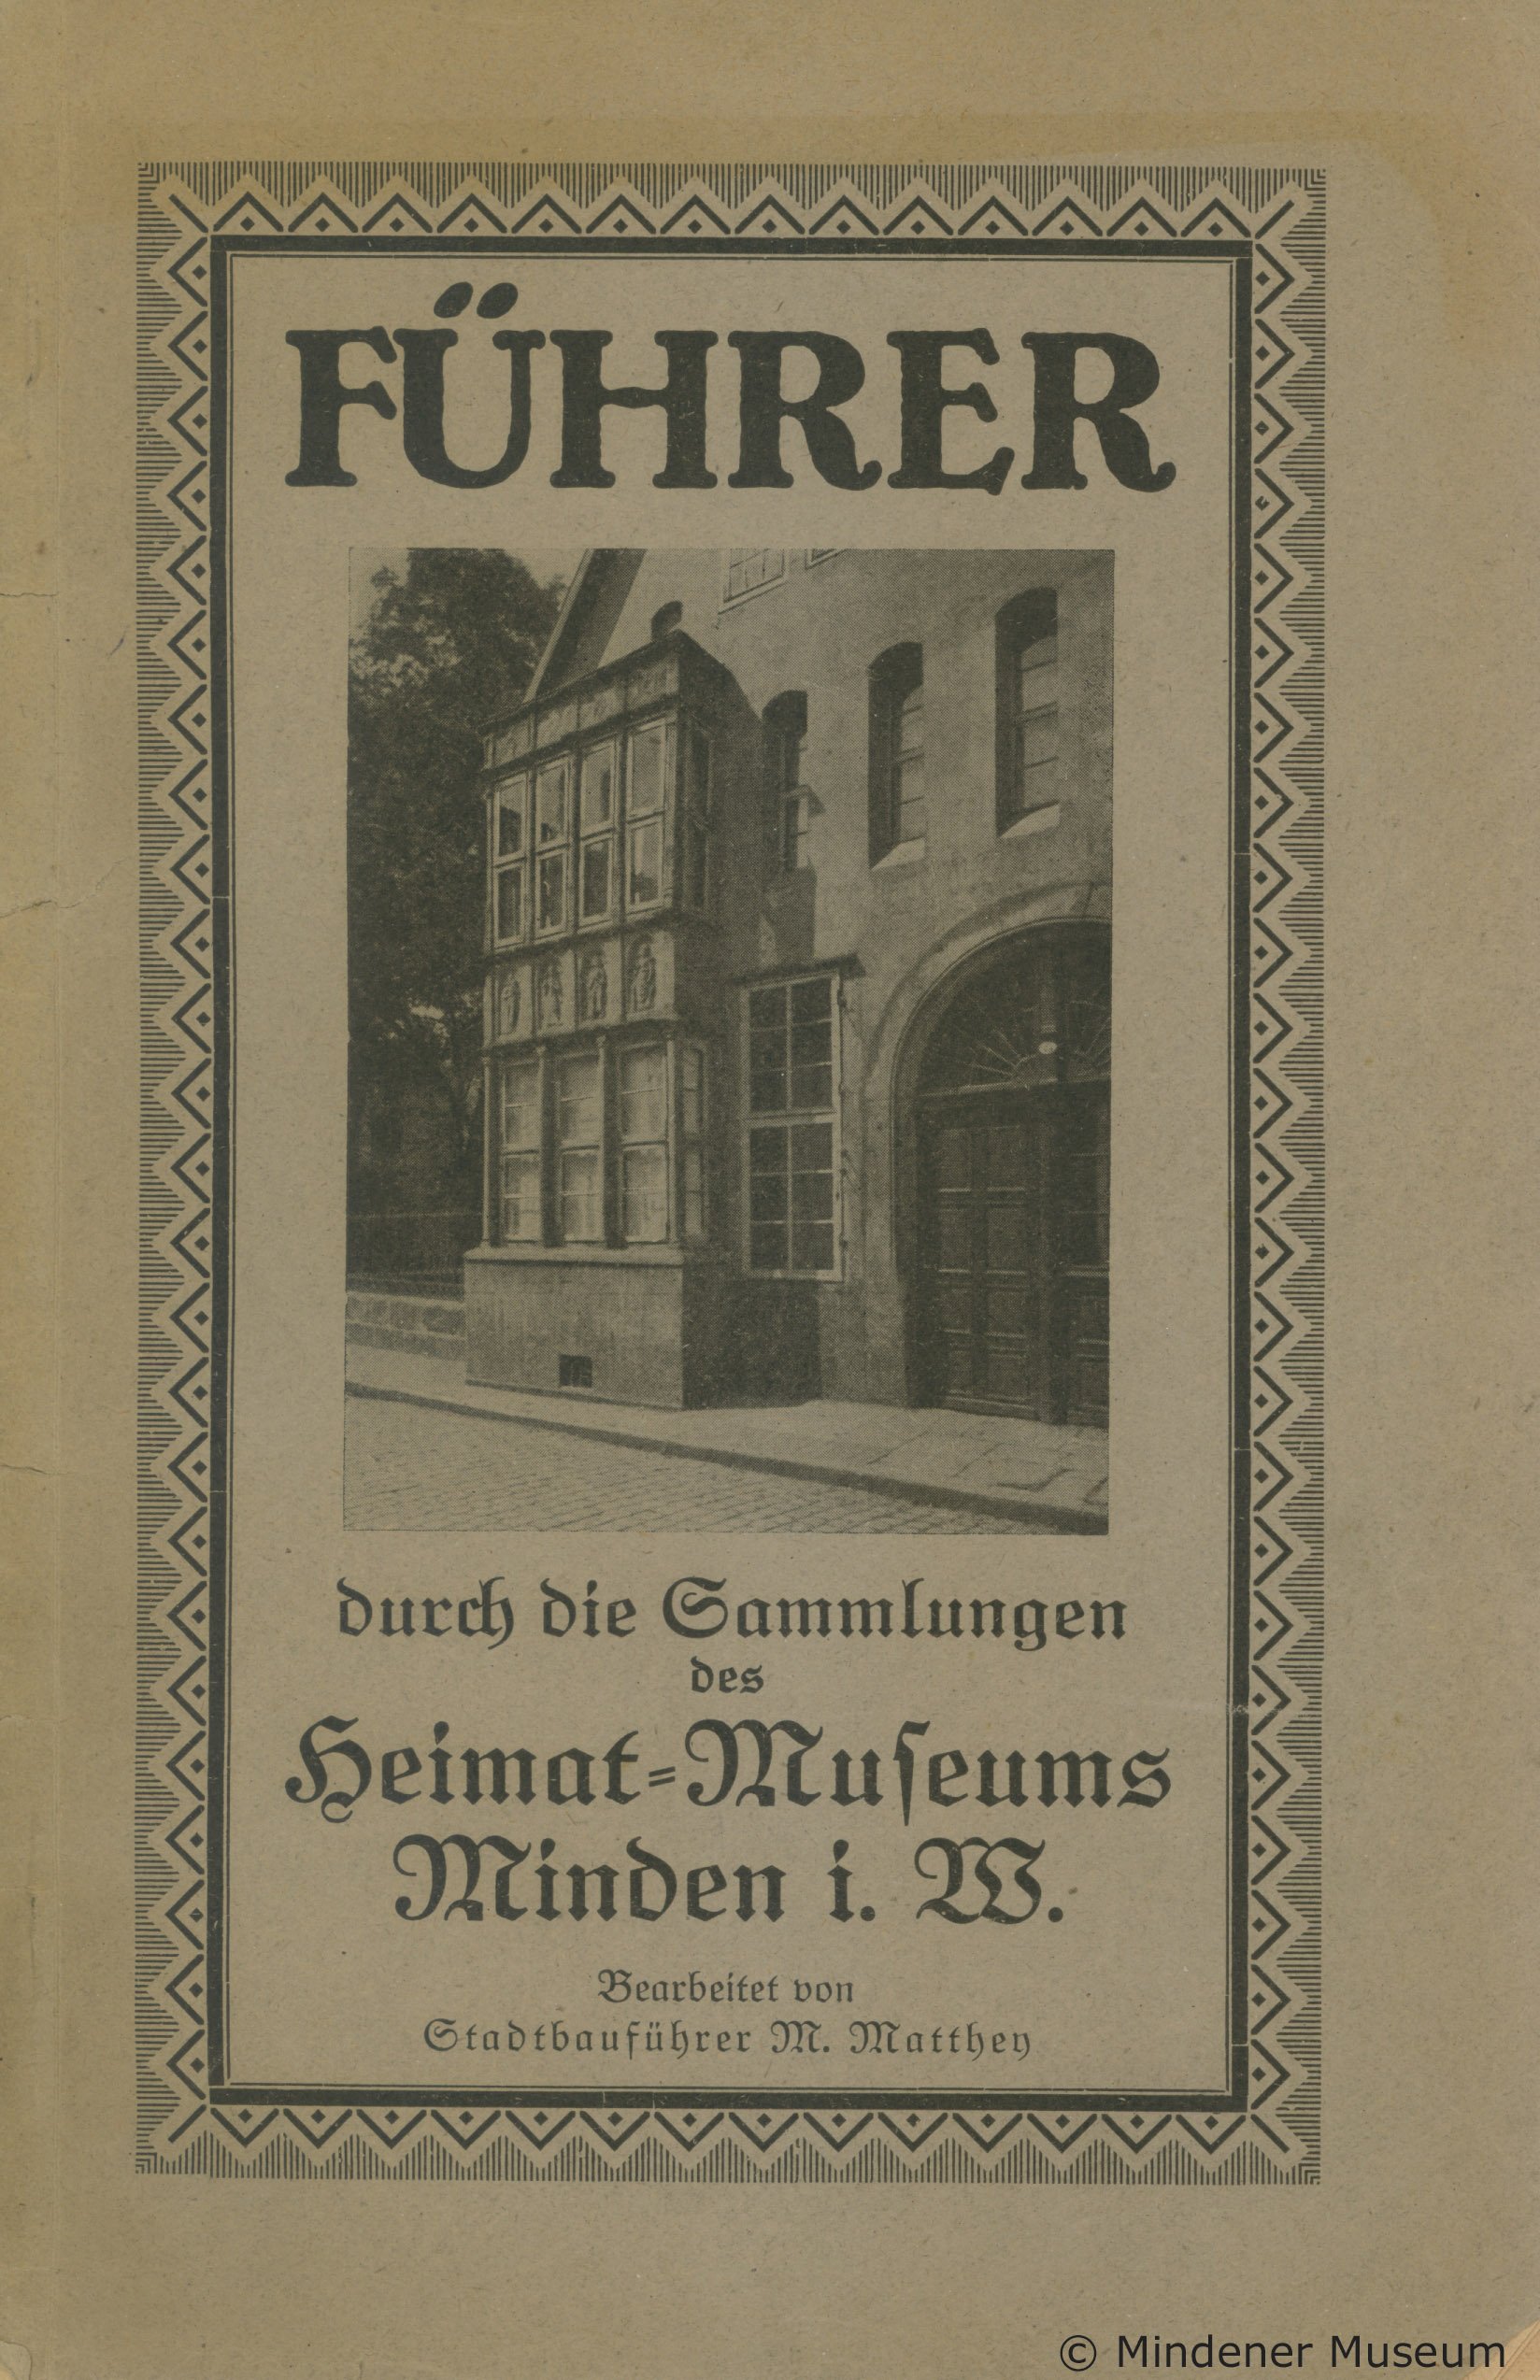 Museumsführer des Mindener Museums von Max Matthey aus dem Jahr 1922 (Mindener Museum RR-R)